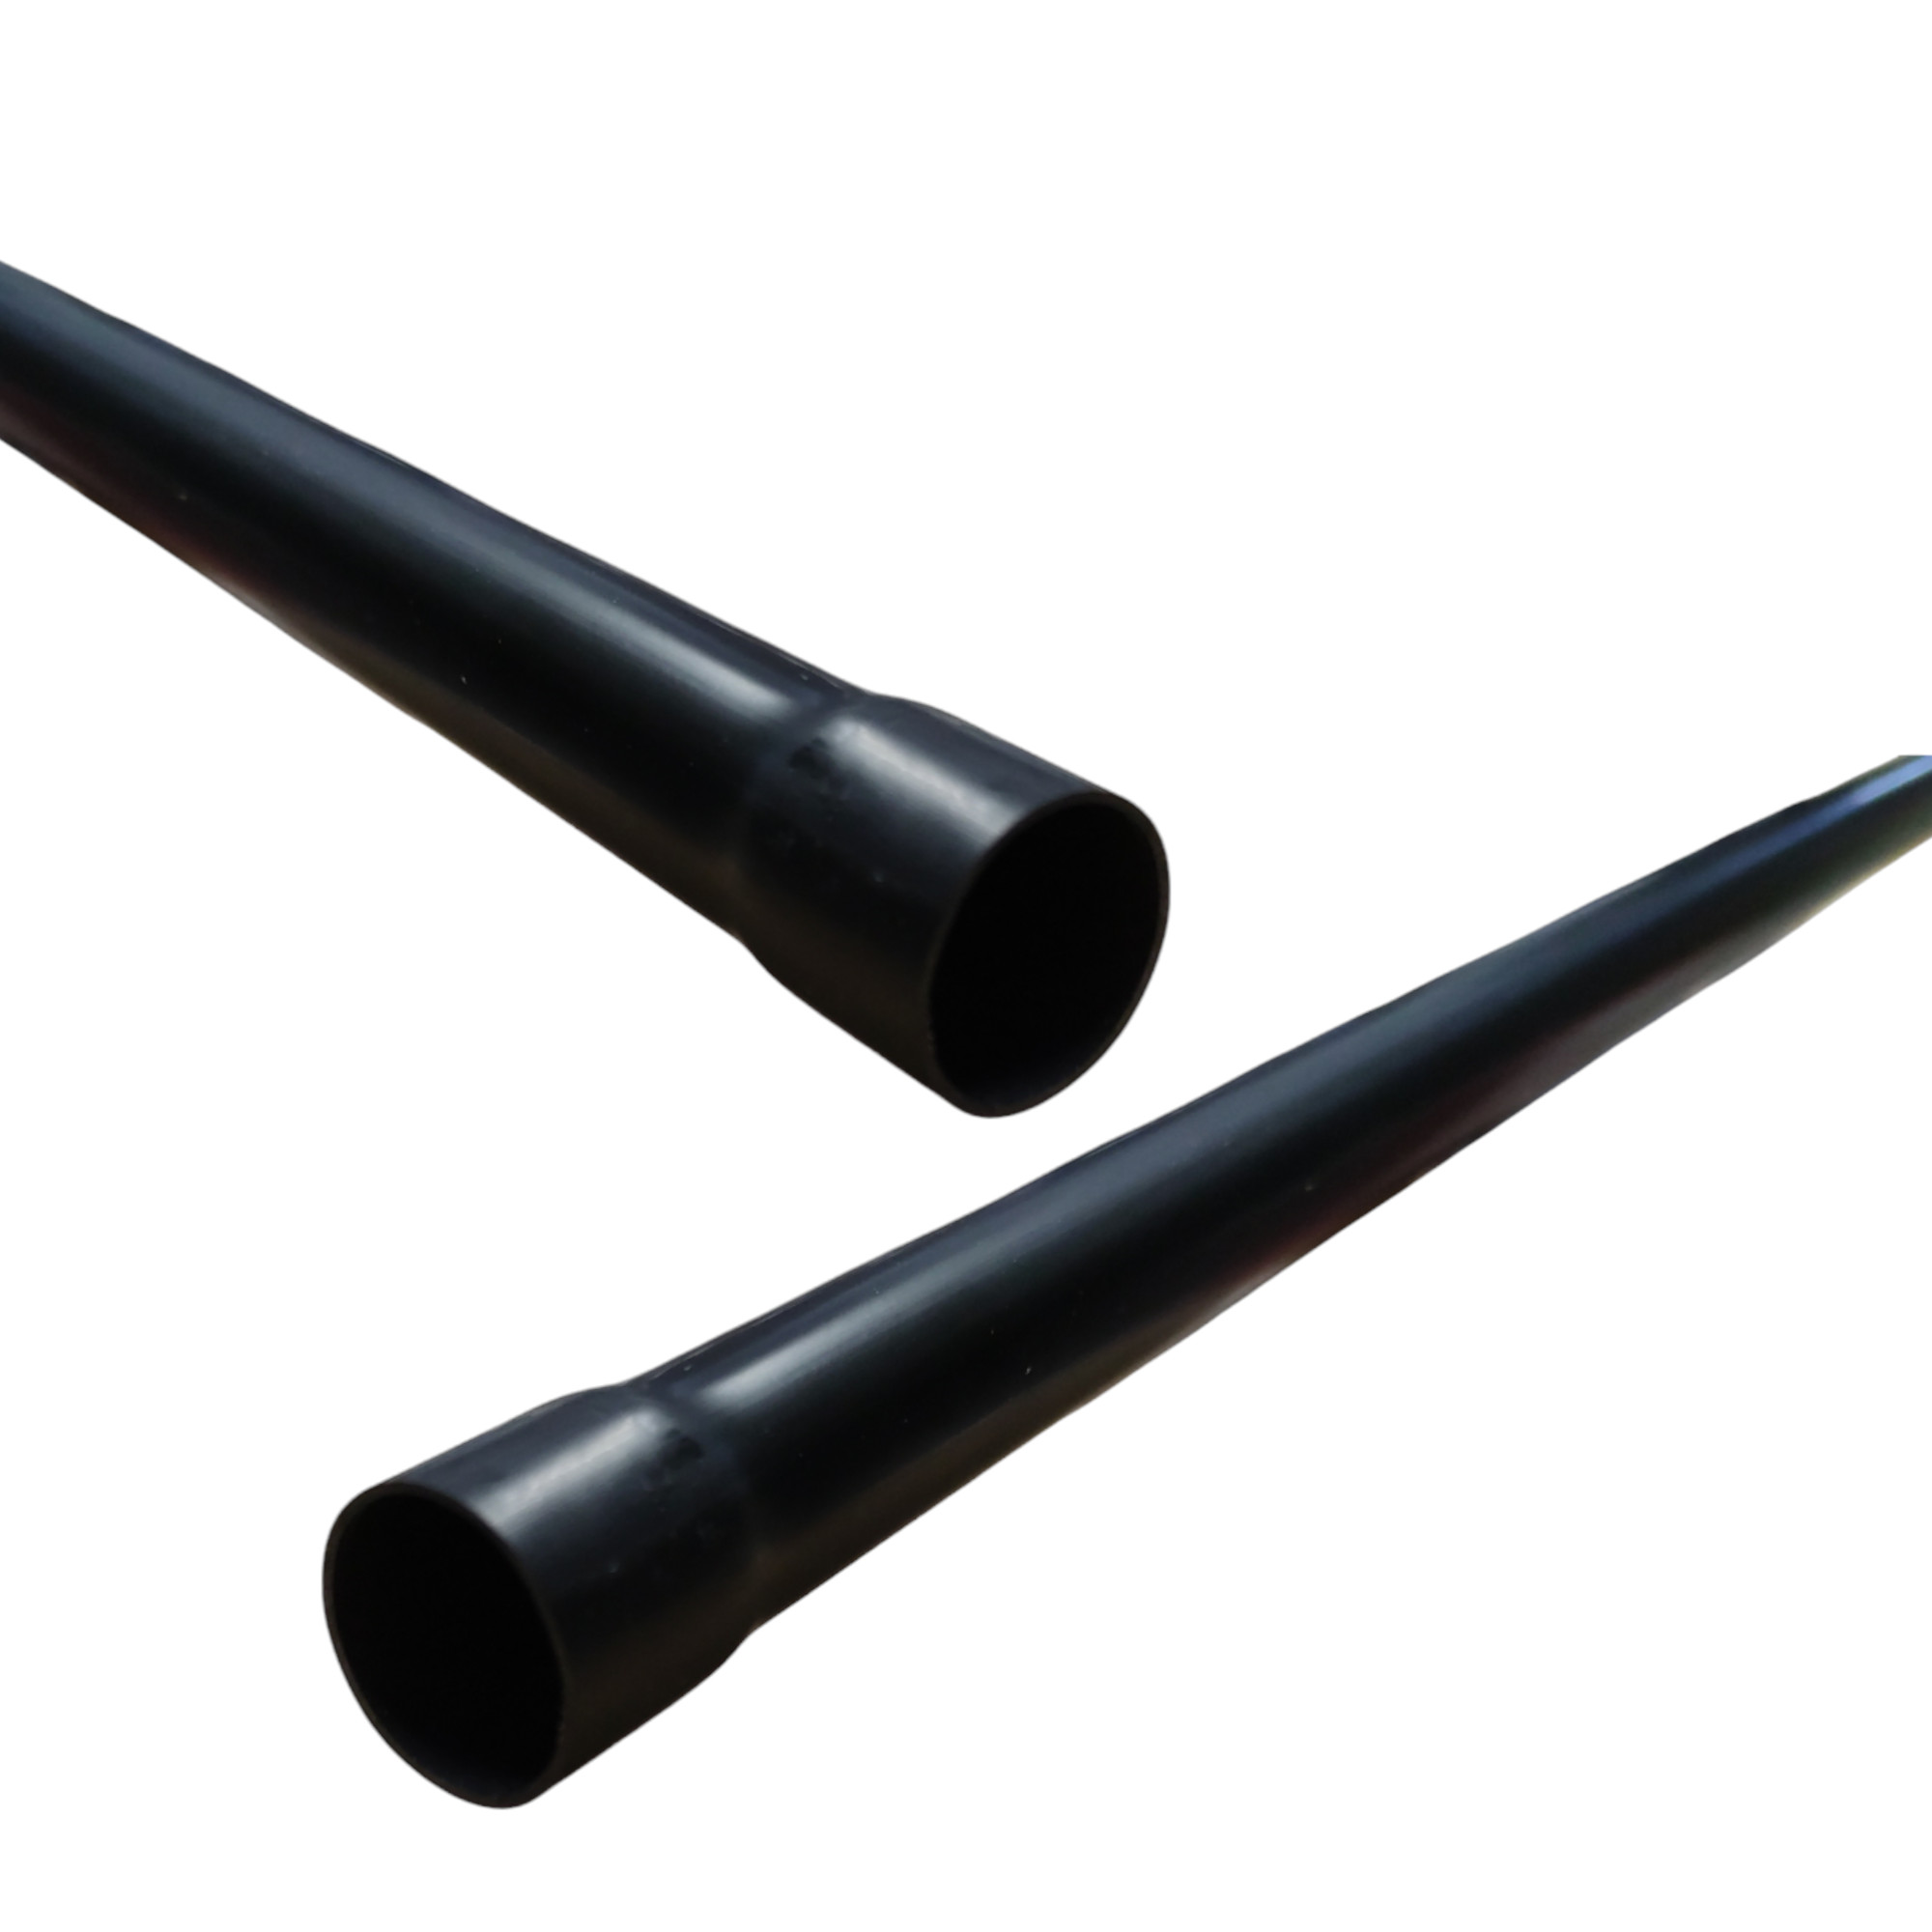 Elektrorohr Rohr Elektroinstallationsrohr starre schwarze Kelchrohr Durchmesser 25mm.